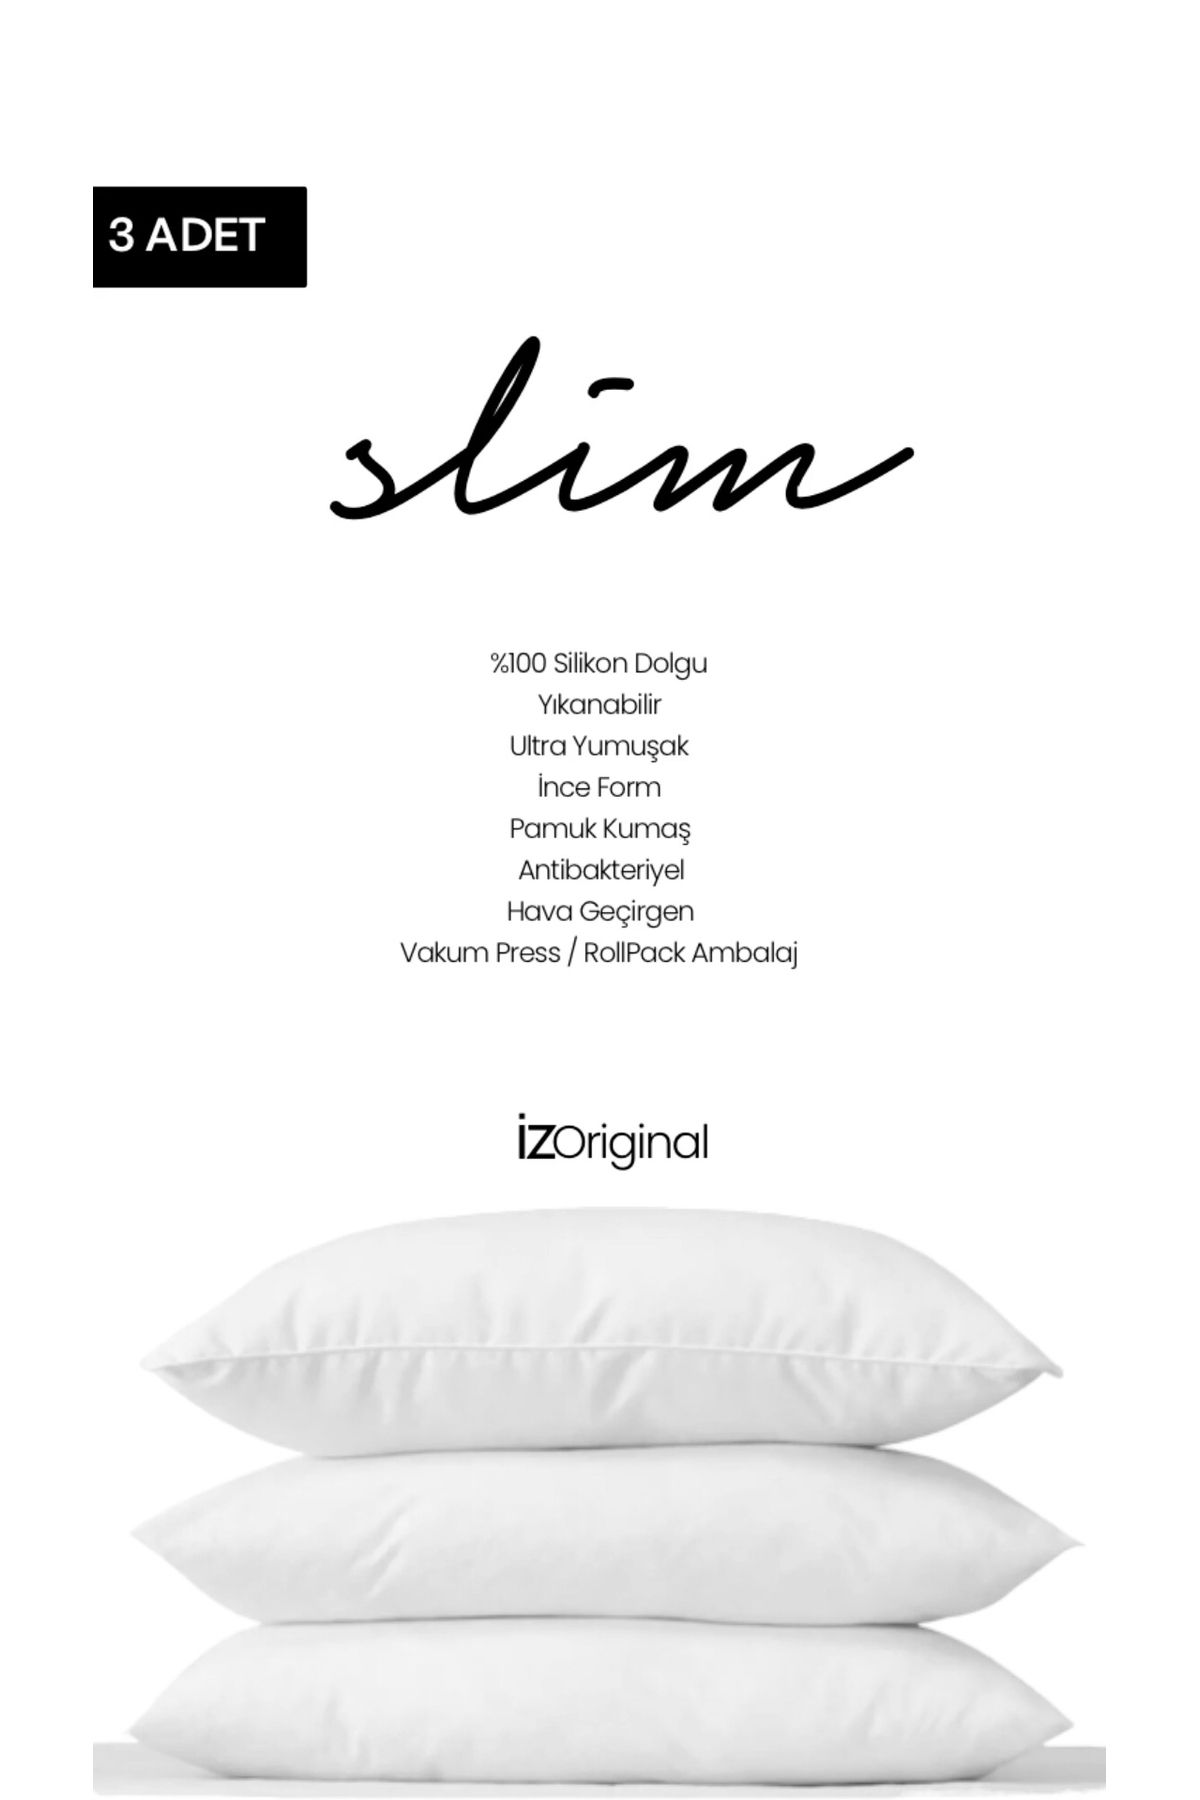 İz Concept İz Original 3 Adet Slim Yastık İnce Form %100 HCS Silikon Dolgu Ultra Yumuşak 600Gr